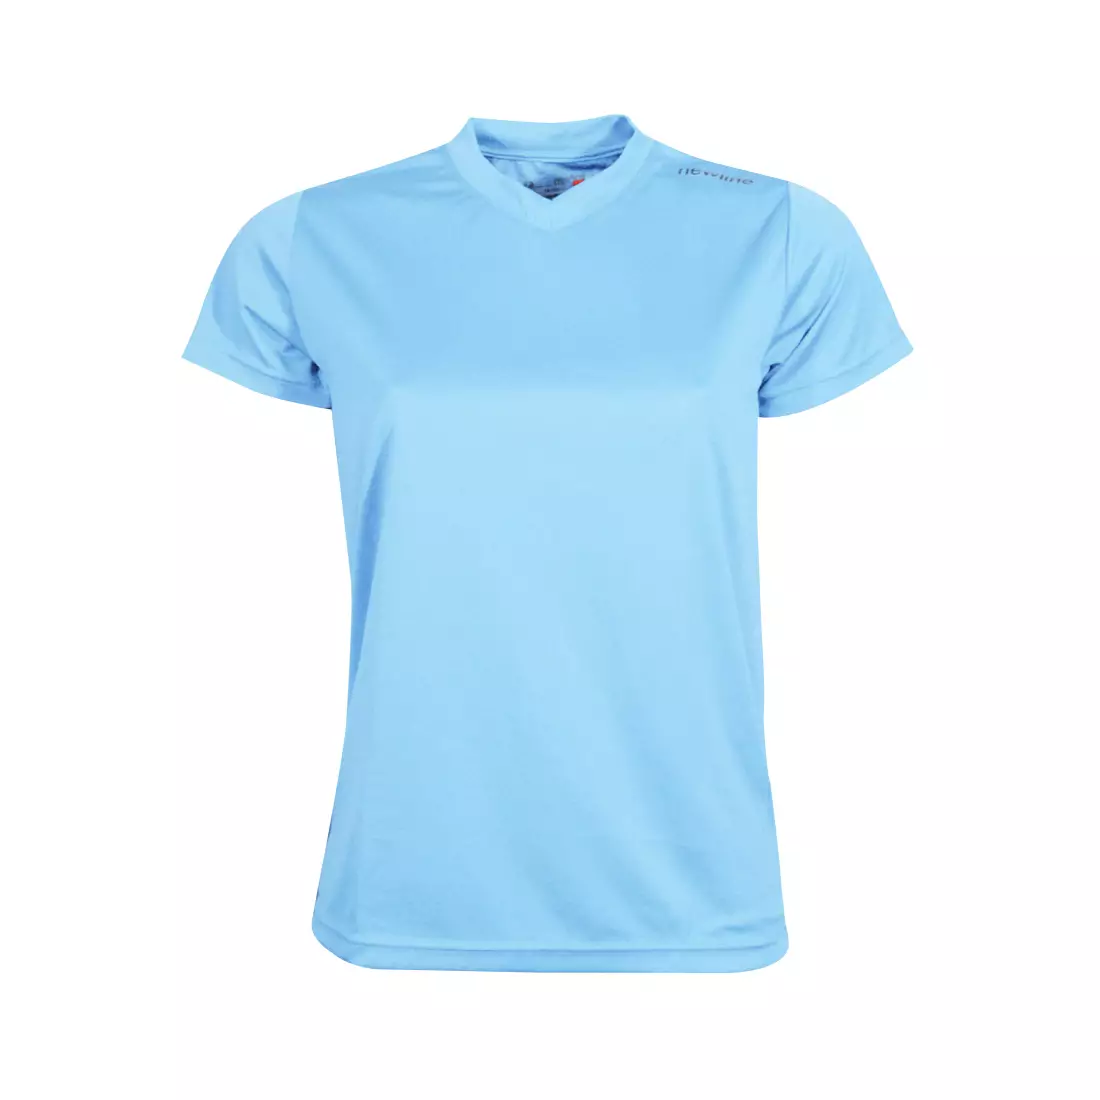 NEWLINE BASE COOL T-SHIRT - women's running T-shirt 13614-052